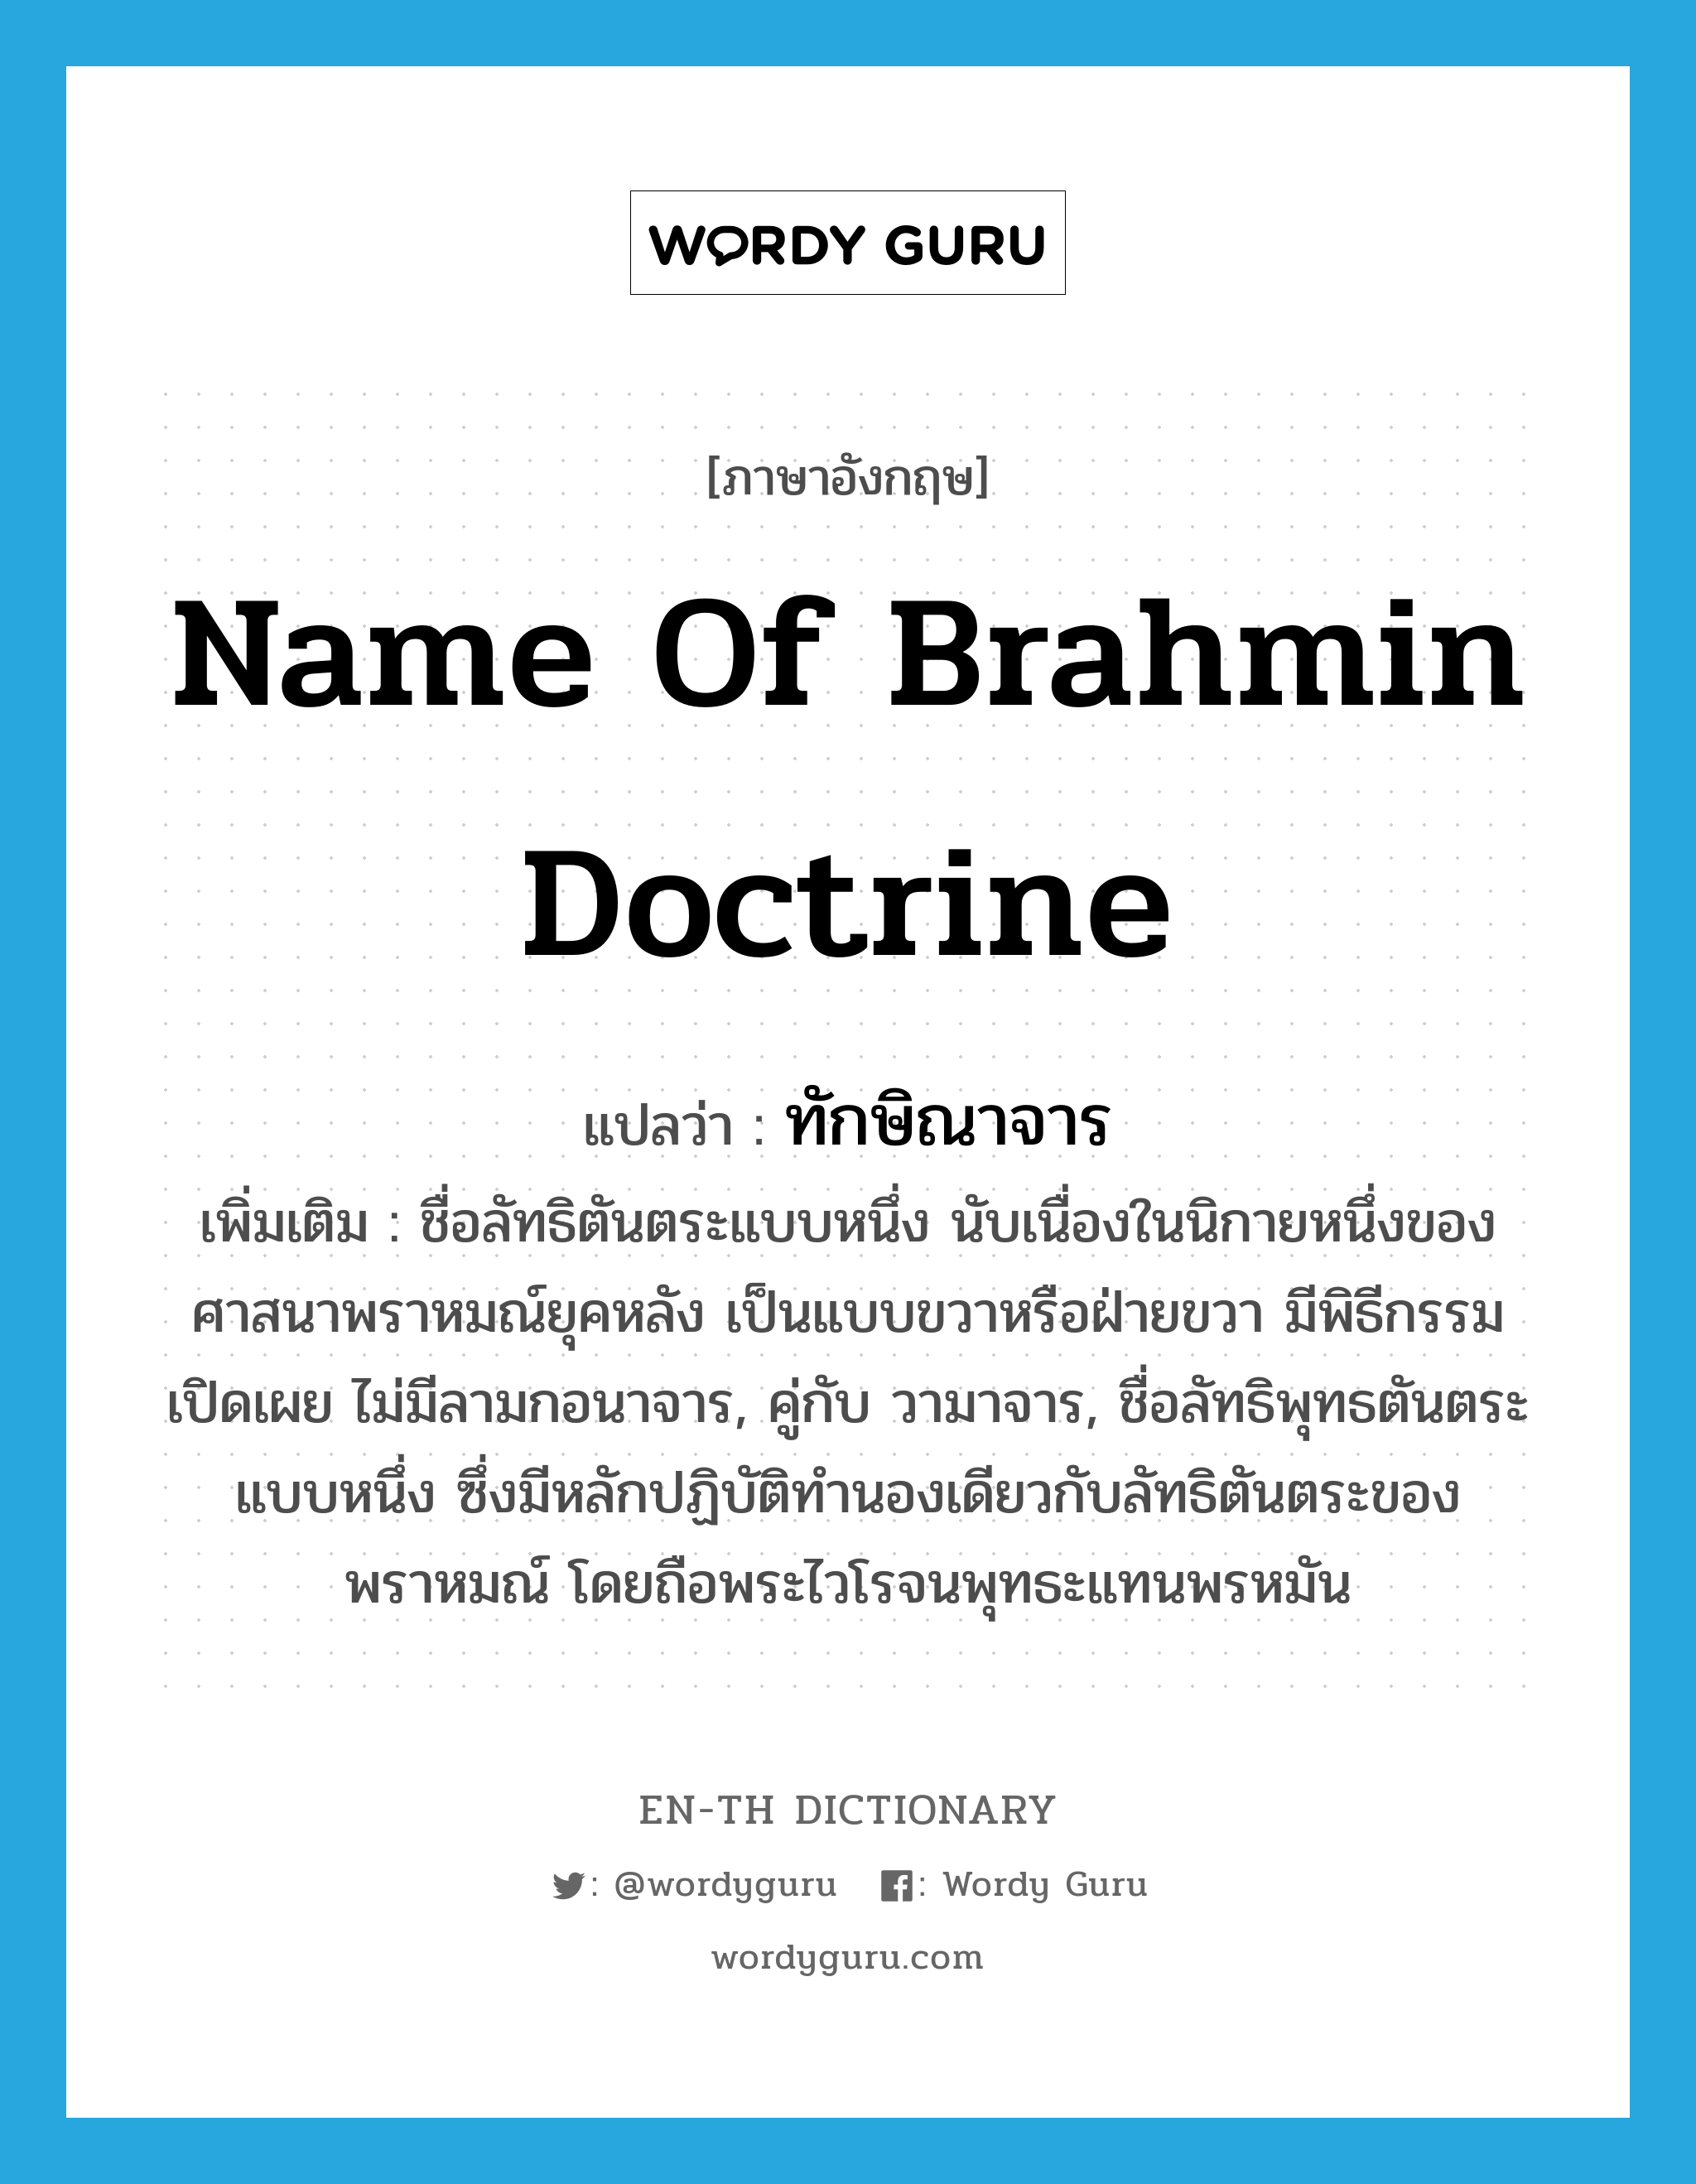 name of Brahmin doctrine แปลว่า?, คำศัพท์ภาษาอังกฤษ name of Brahmin doctrine แปลว่า ทักษิณาจาร ประเภท N เพิ่มเติม ชื่อลัทธิตันตระแบบหนึ่ง นับเนื่องในนิกายหนึ่งของศาสนาพราหมณ์ยุคหลัง เป็นแบบขวาหรือฝ่ายขวา มีพิธีกรรมเปิดเผย ไม่มีลามกอนาจาร, คู่กับ วามาจาร, ชื่อลัทธิพุทธตันตระแบบหนึ่ง ซึ่งมีหลักปฏิบัติทำนองเดียวกับลัทธิตันตระของพราหมณ์ โดยถือพระไวโรจนพุทธะแทนพรหมัน หมวด N